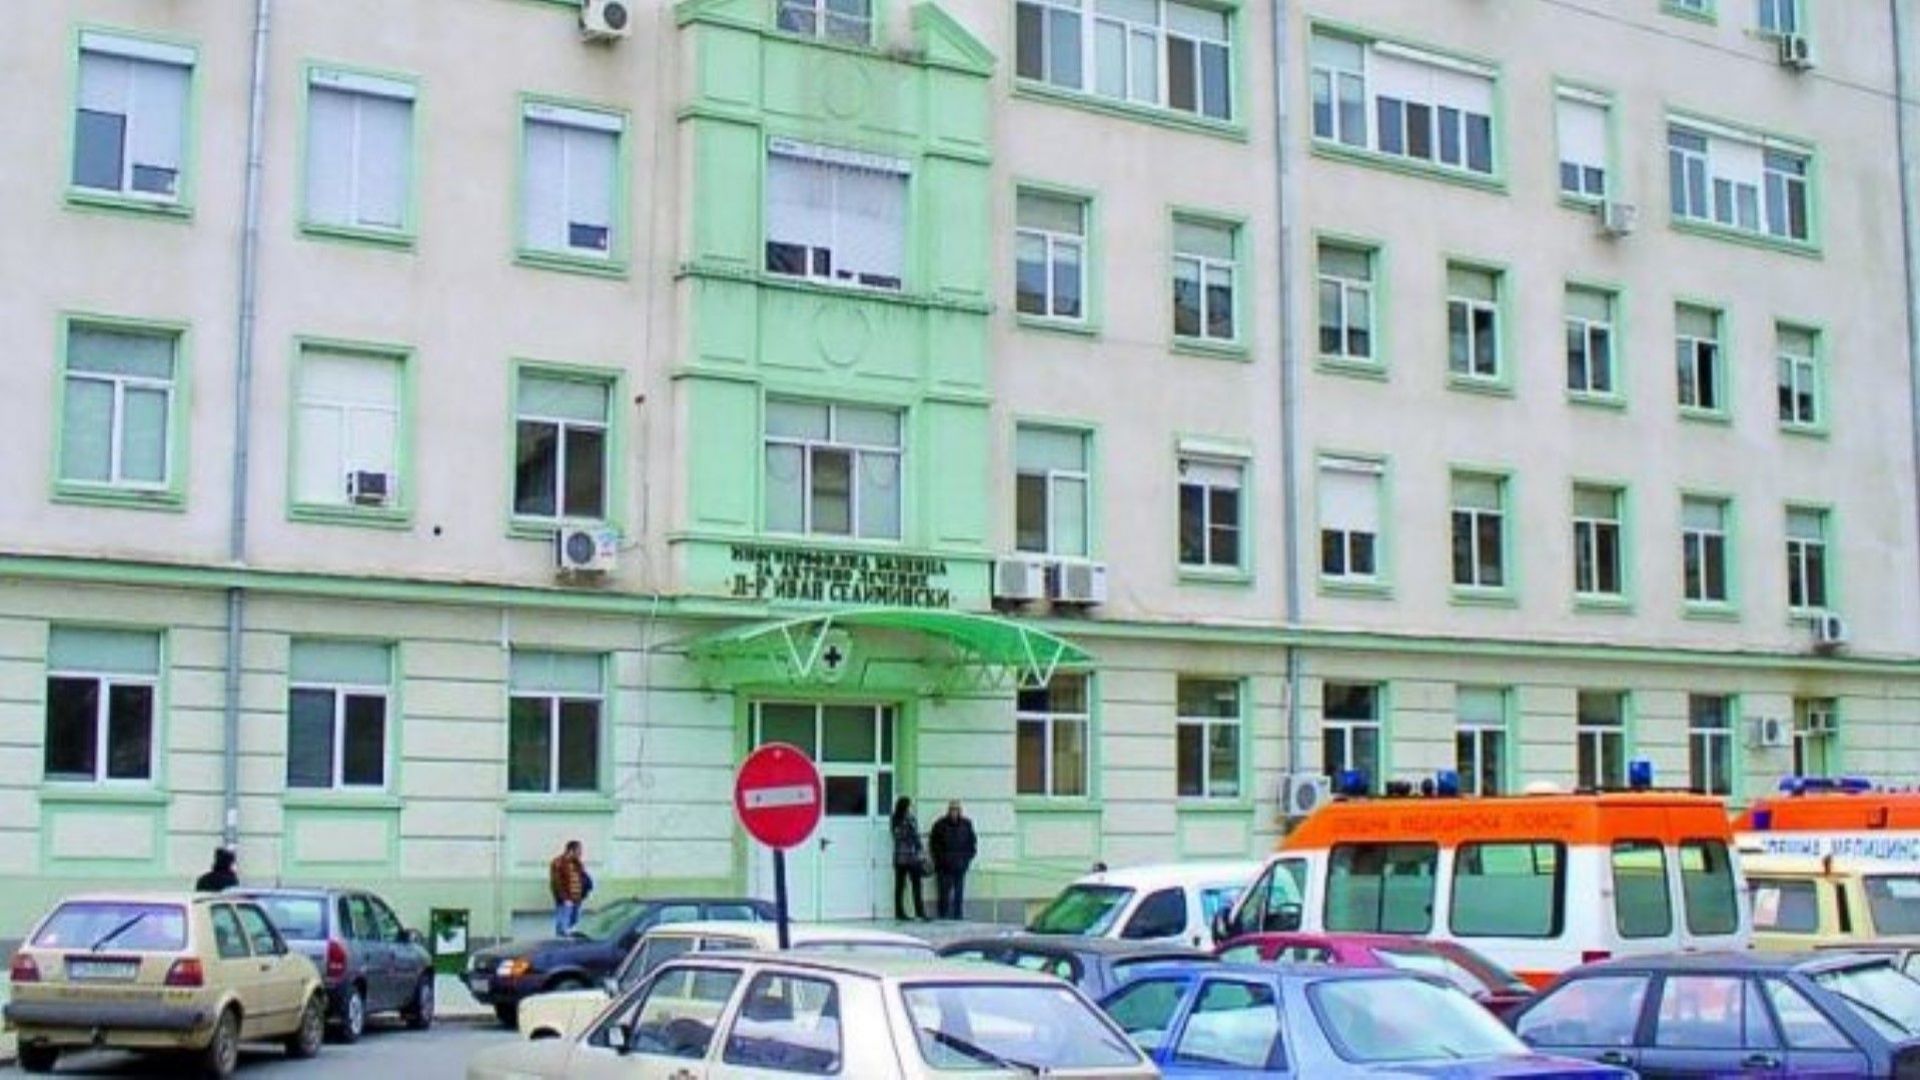 Инцидентът с падналото от 4-ия етаж дете е станал в сливенски хотел